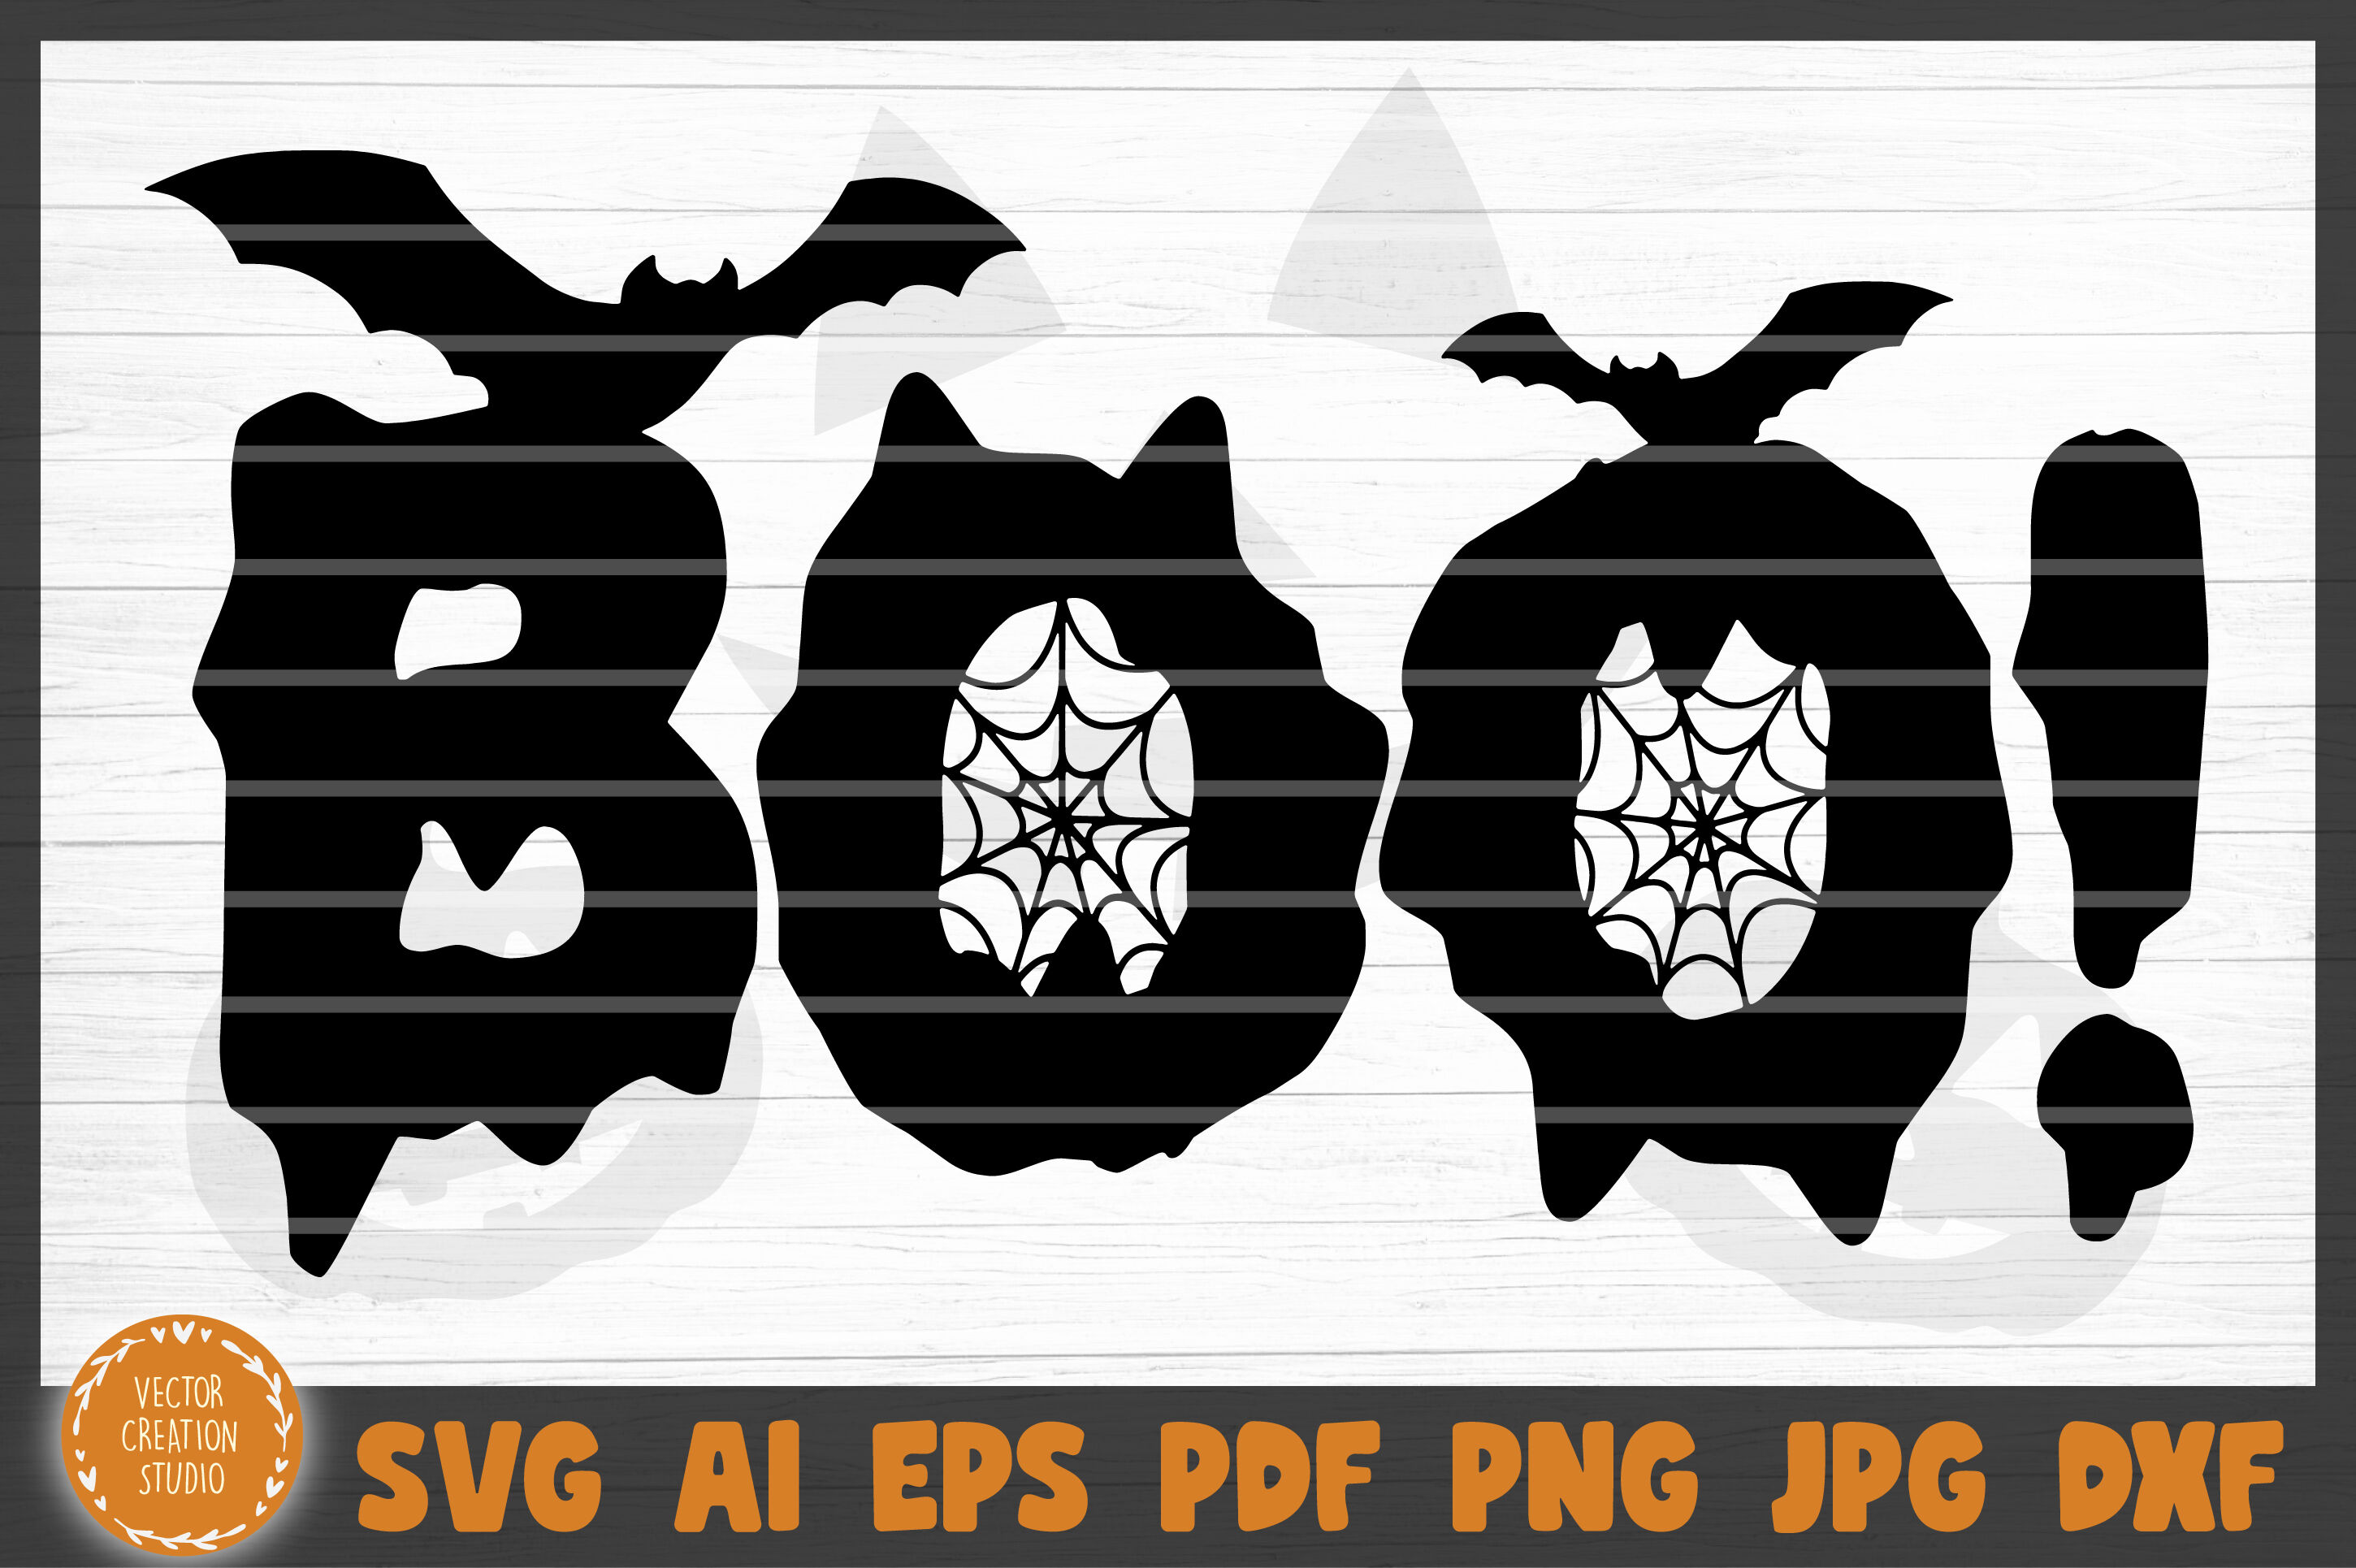 png. Boo Cut File SVG PDF